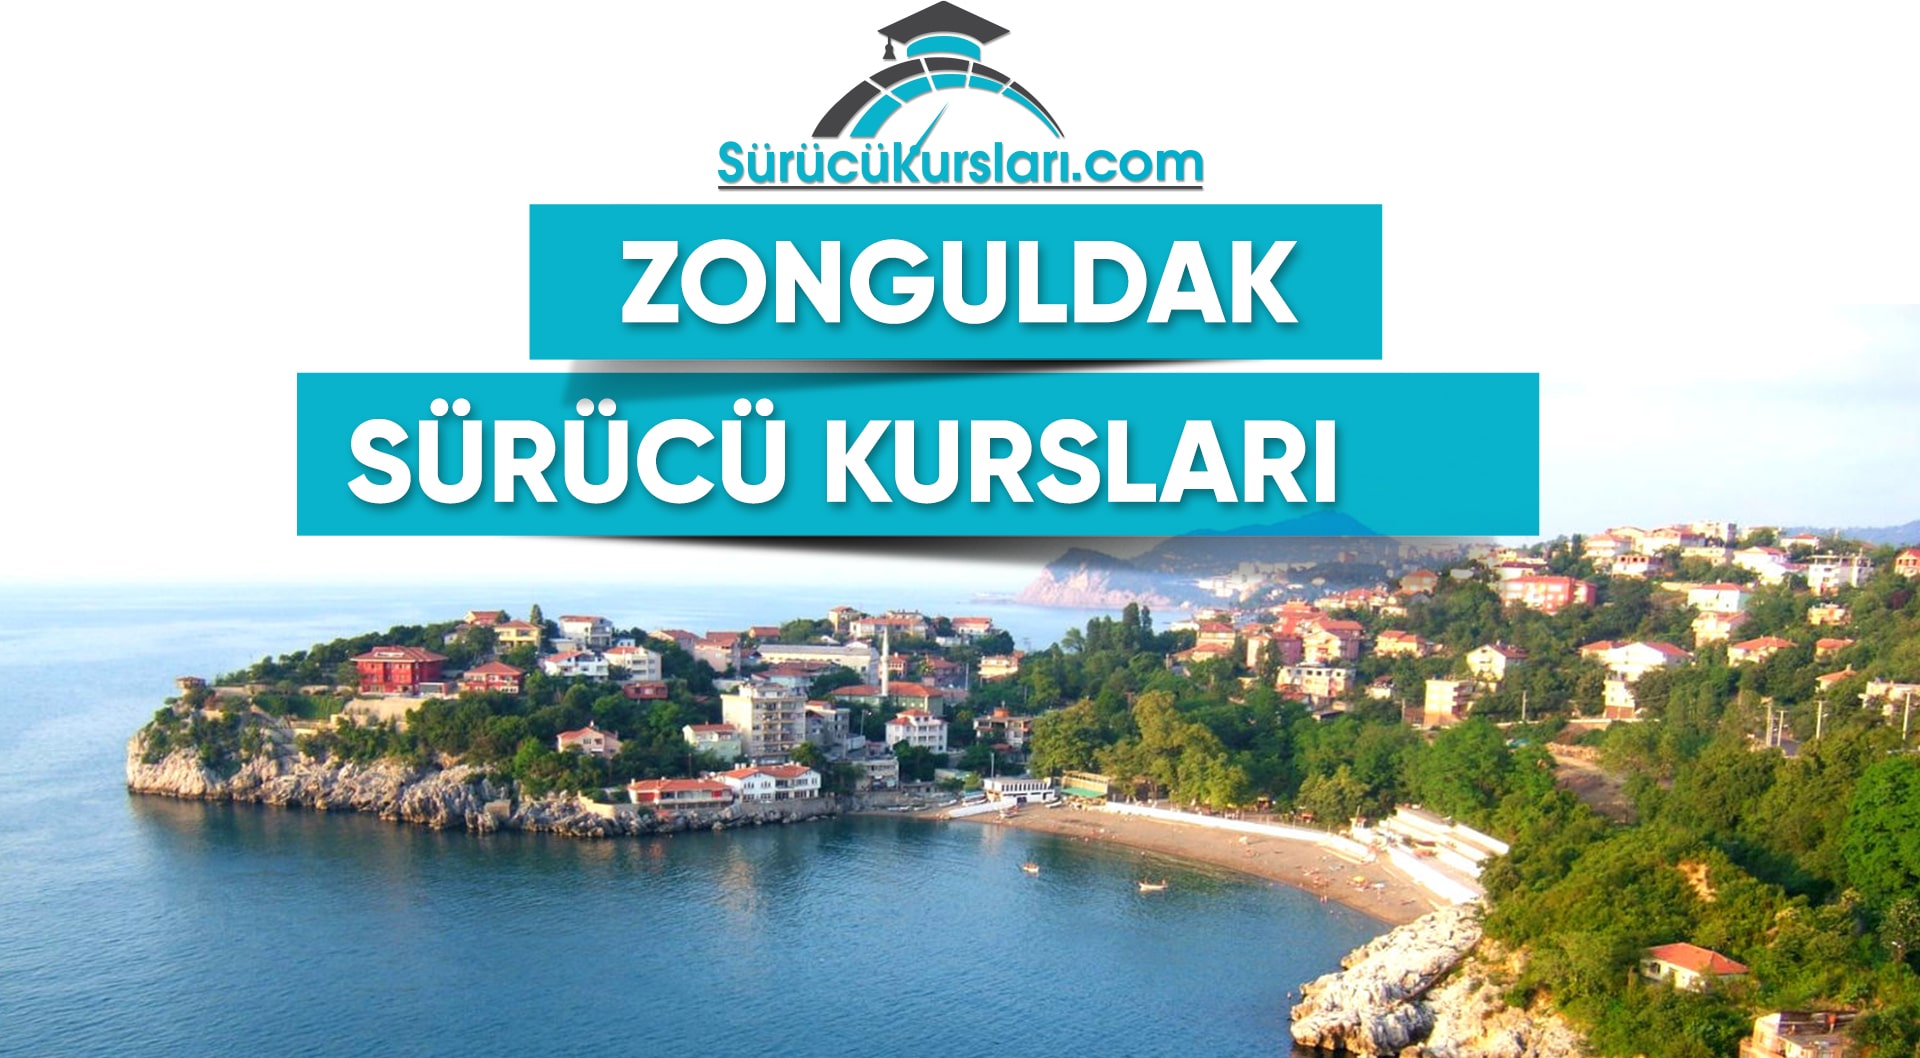 Zonguldak Sürücü Kursları – Zonguldak Ehliyet Kursları